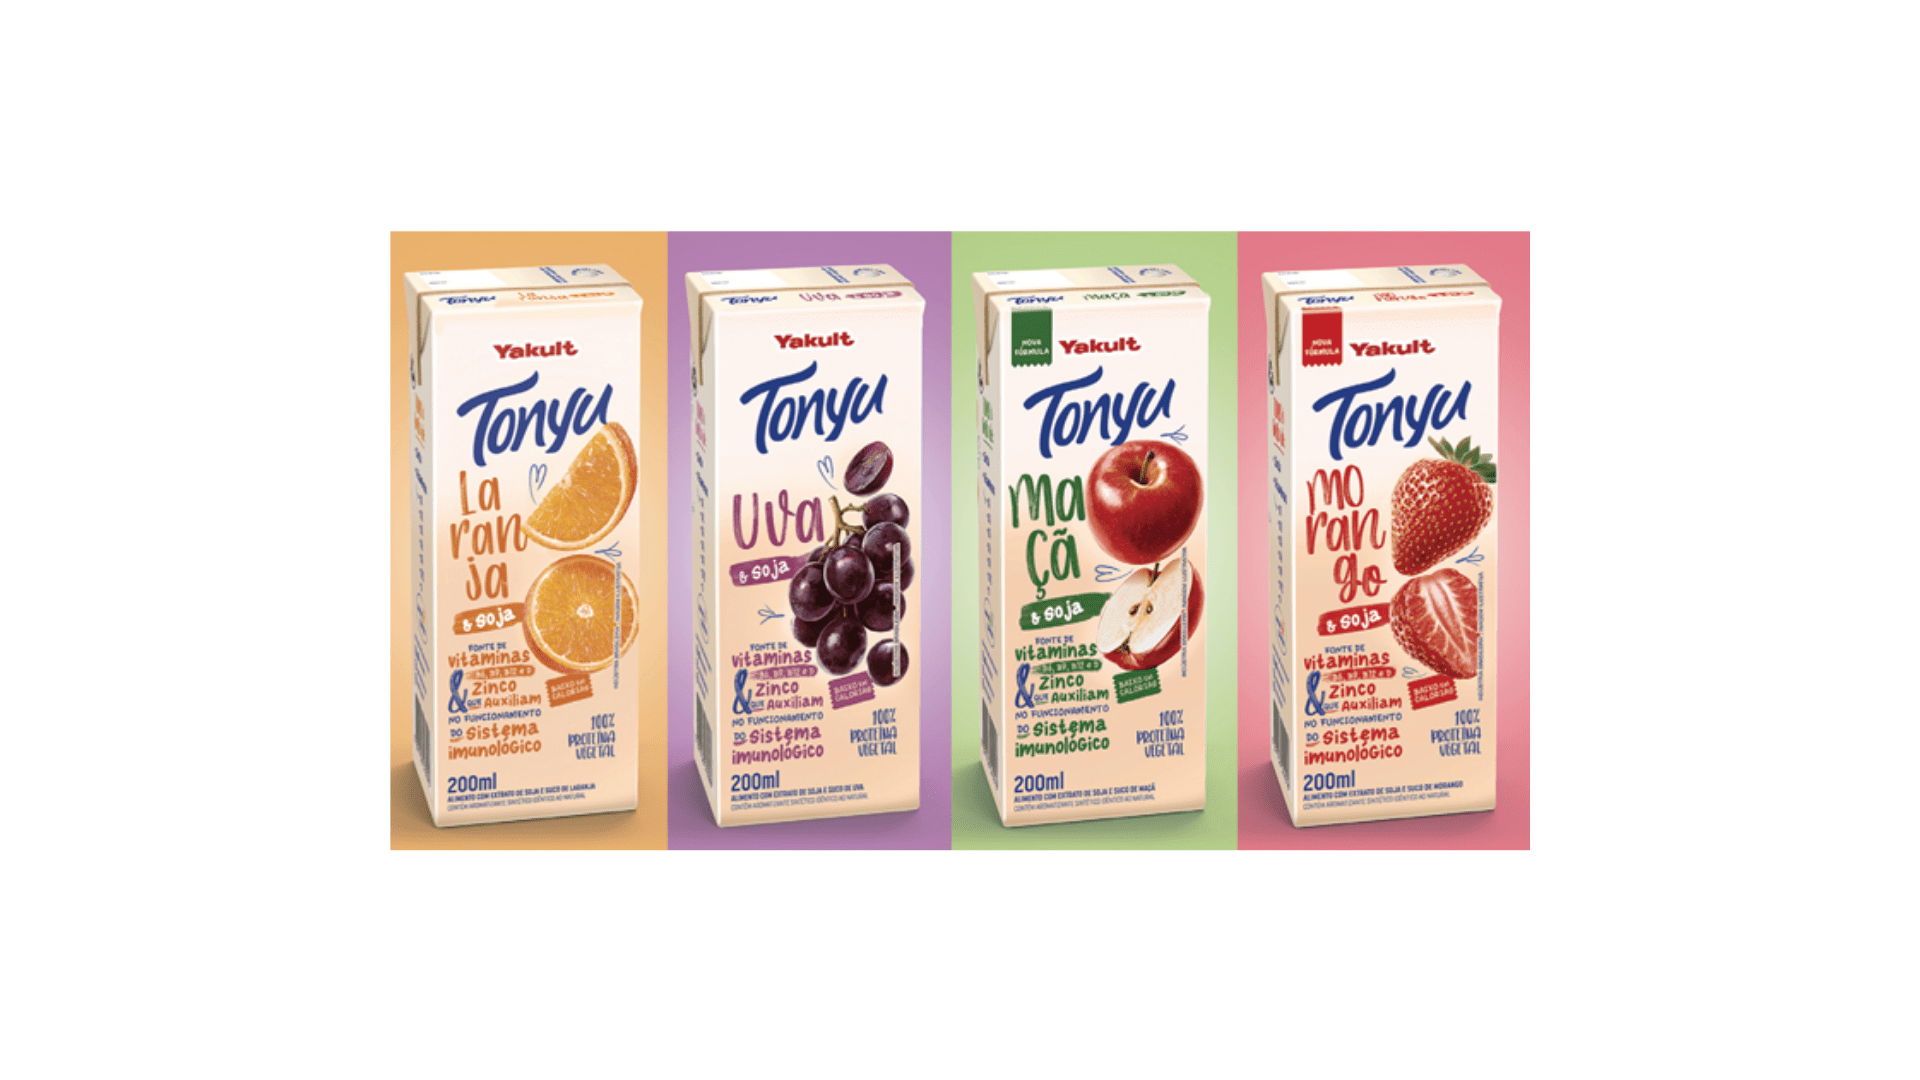 Featured image for “Tonyu muda formulação e ganha dois novos sabores”